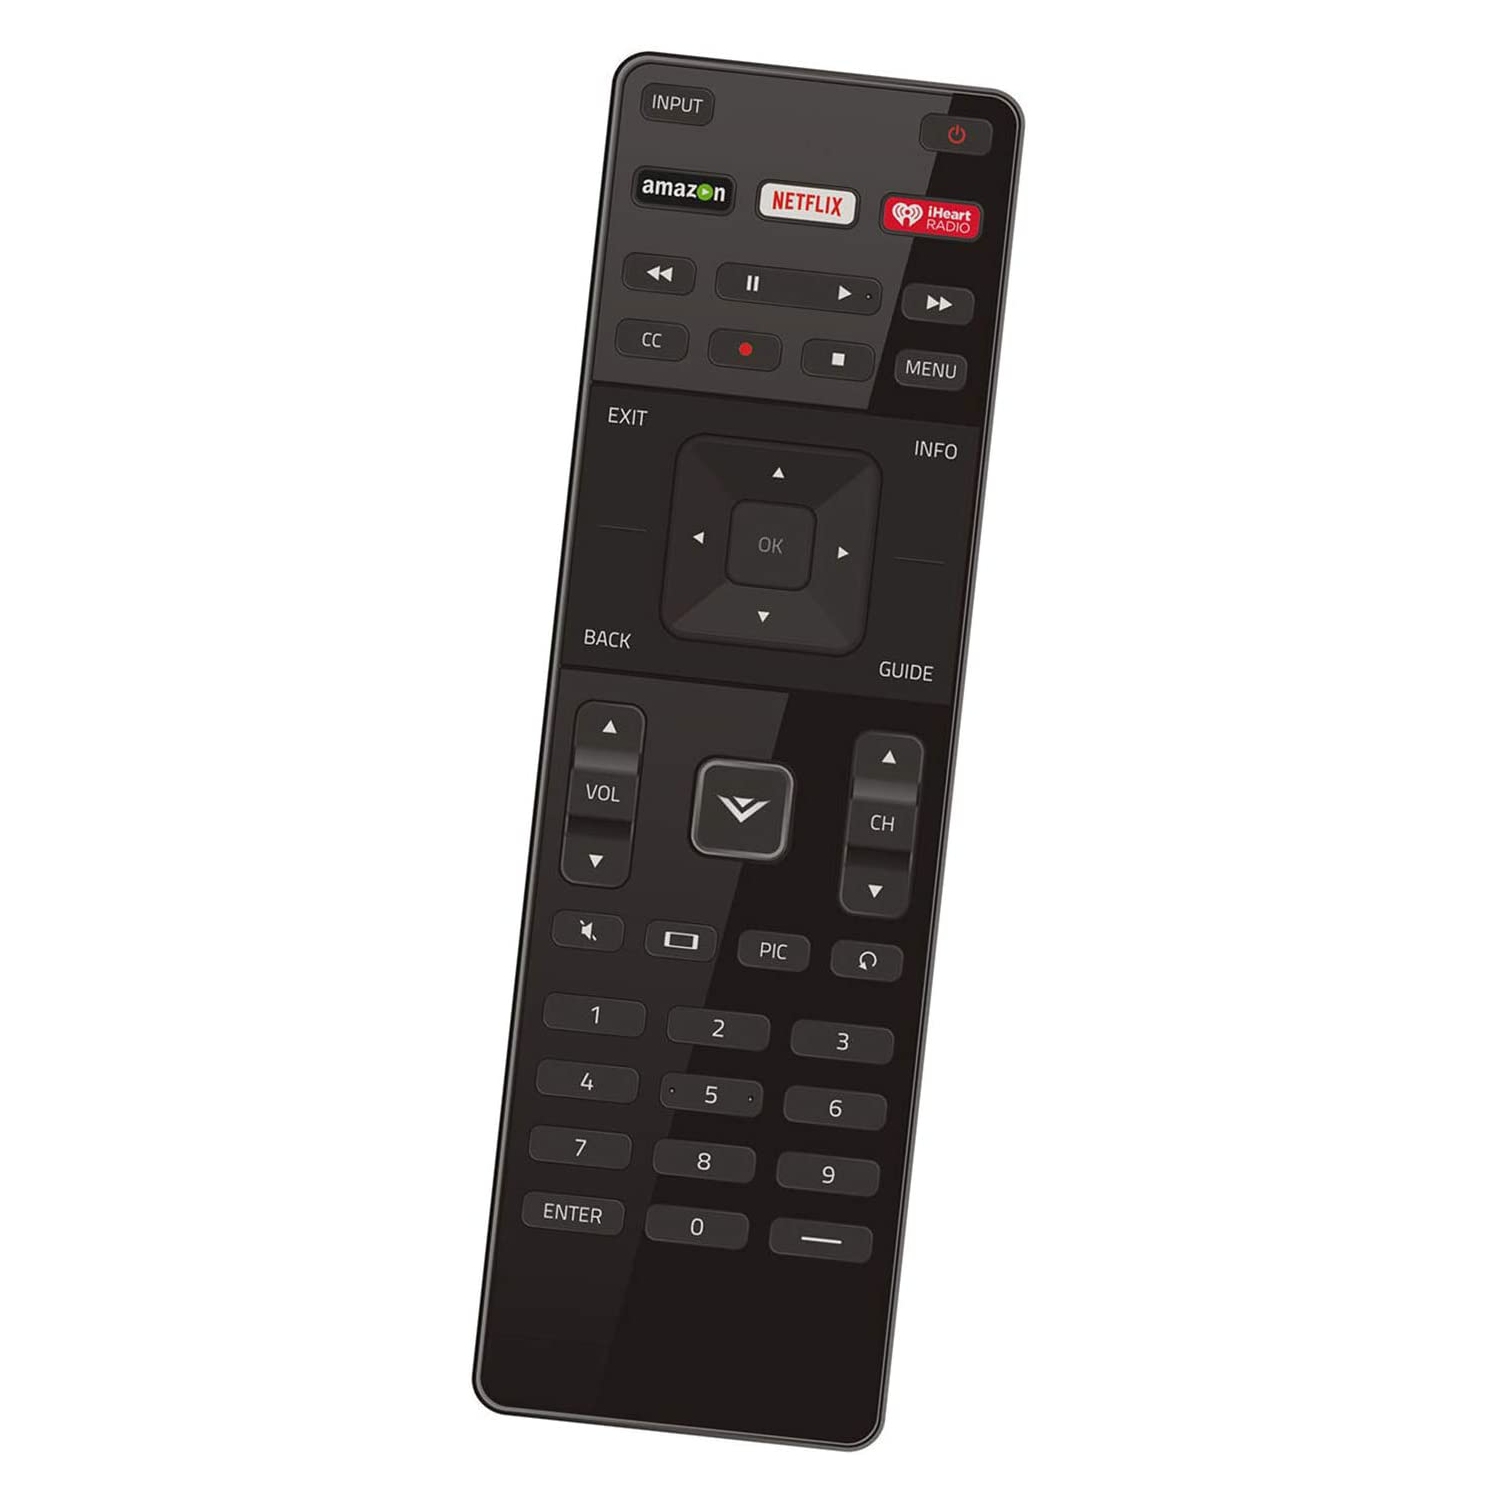 XRT122 Remote Control Replacement fit for Vizio TV E65-C2 E65C2 D39f-E1 D43f-E2 D32f-E1 D39f-E1 D43f-E1 D48f-E0 D50f-E1